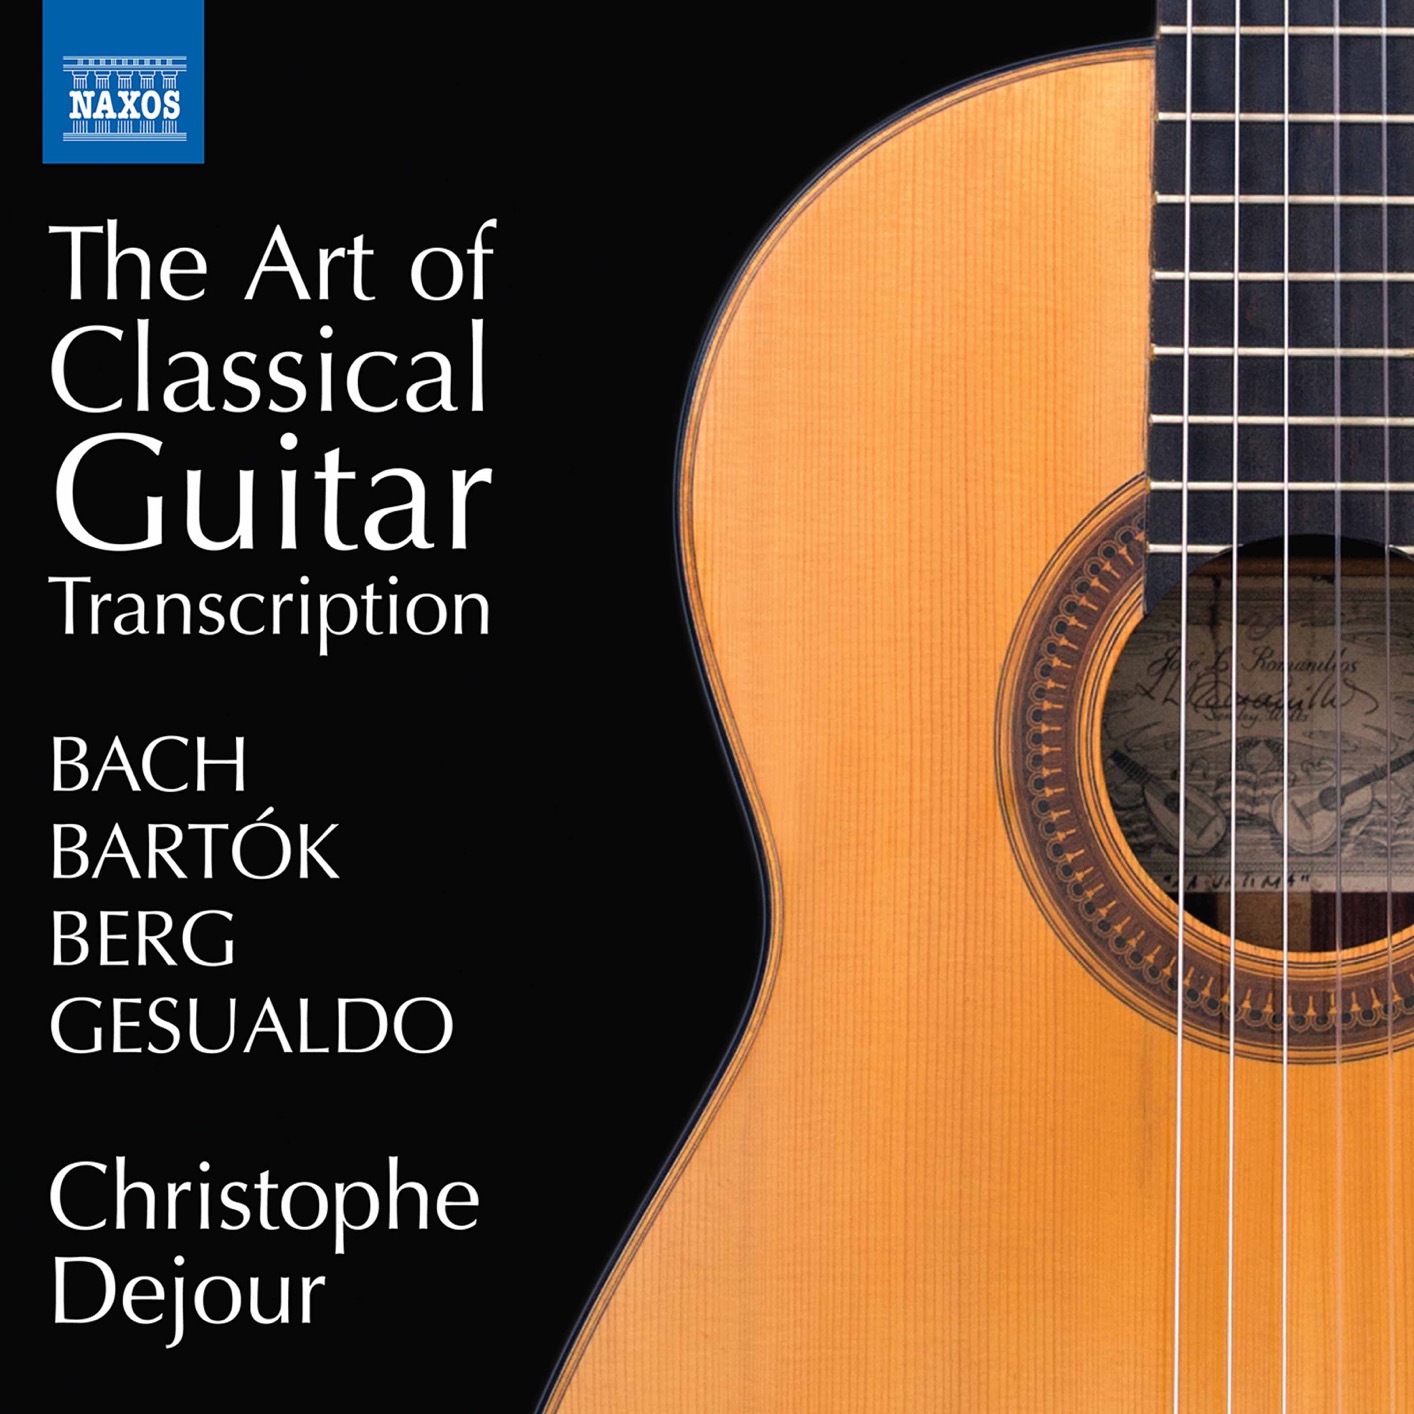 Christophe Dejour – The Art of Classical Guitar Transcription (2020) [FLAC 24bit/96kHz]